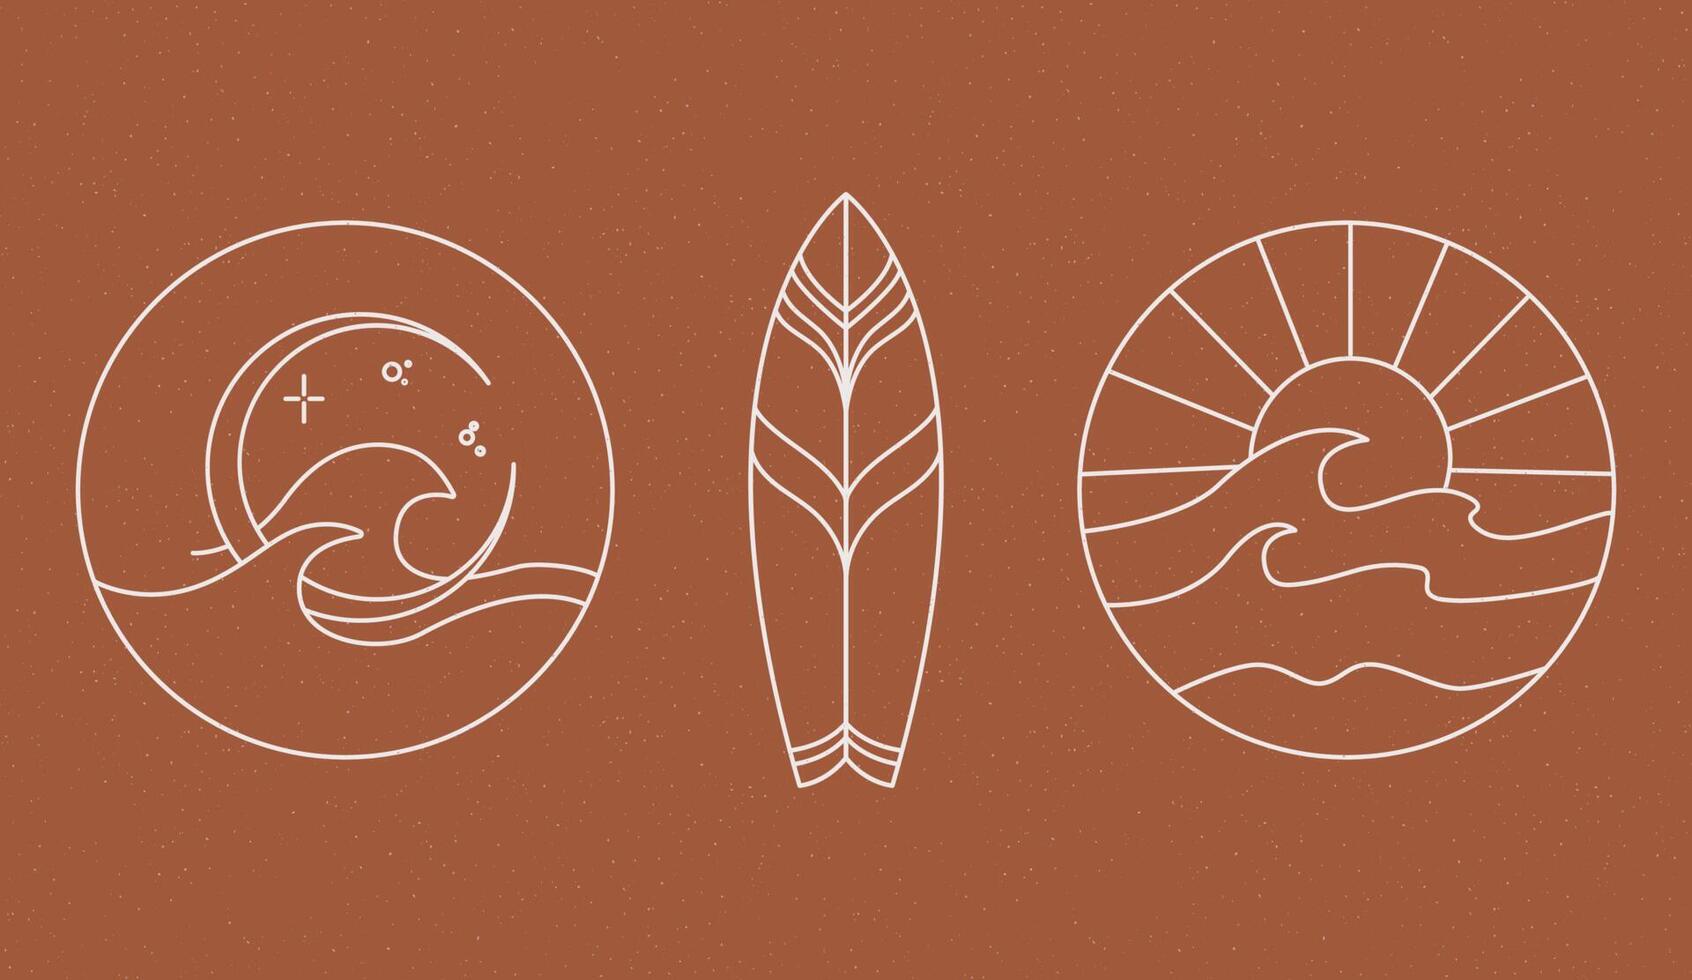 Sommersymbole mit Surfbrettern, Palmblättern, Hürden und Muscheln. süßes meer, ozean und brauner hintergrund mit sand. vektor